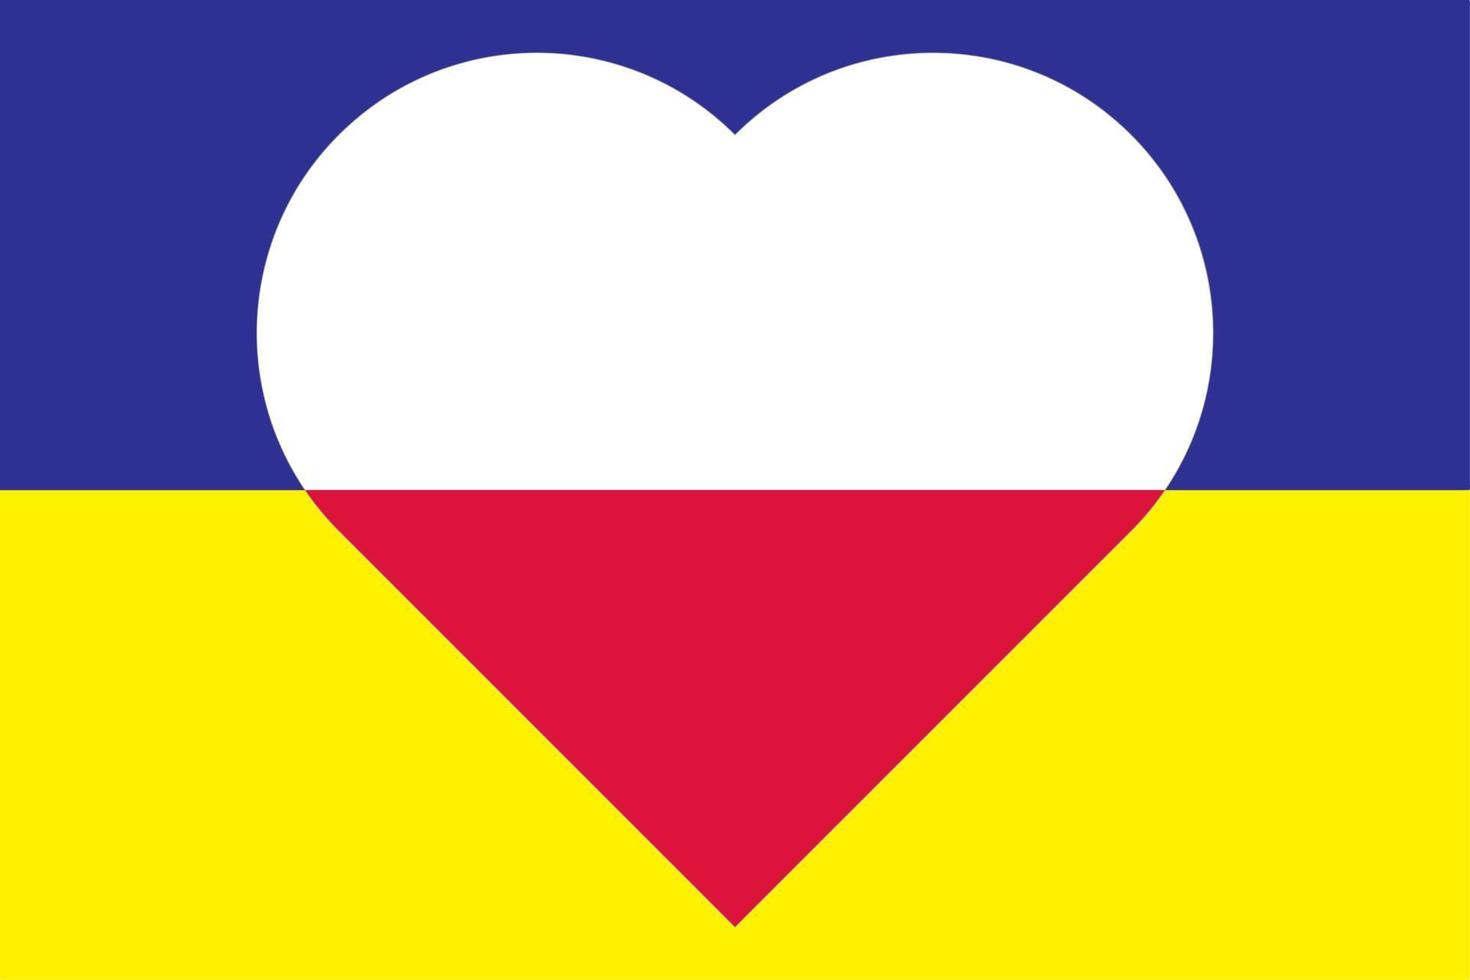 corazón pintado con los colores de la bandera de polonia en la bandera de ucrania. ilustración vectorial de un corazón con el símbolo nacional de polonia sobre un fondo azul-amarillo. vector